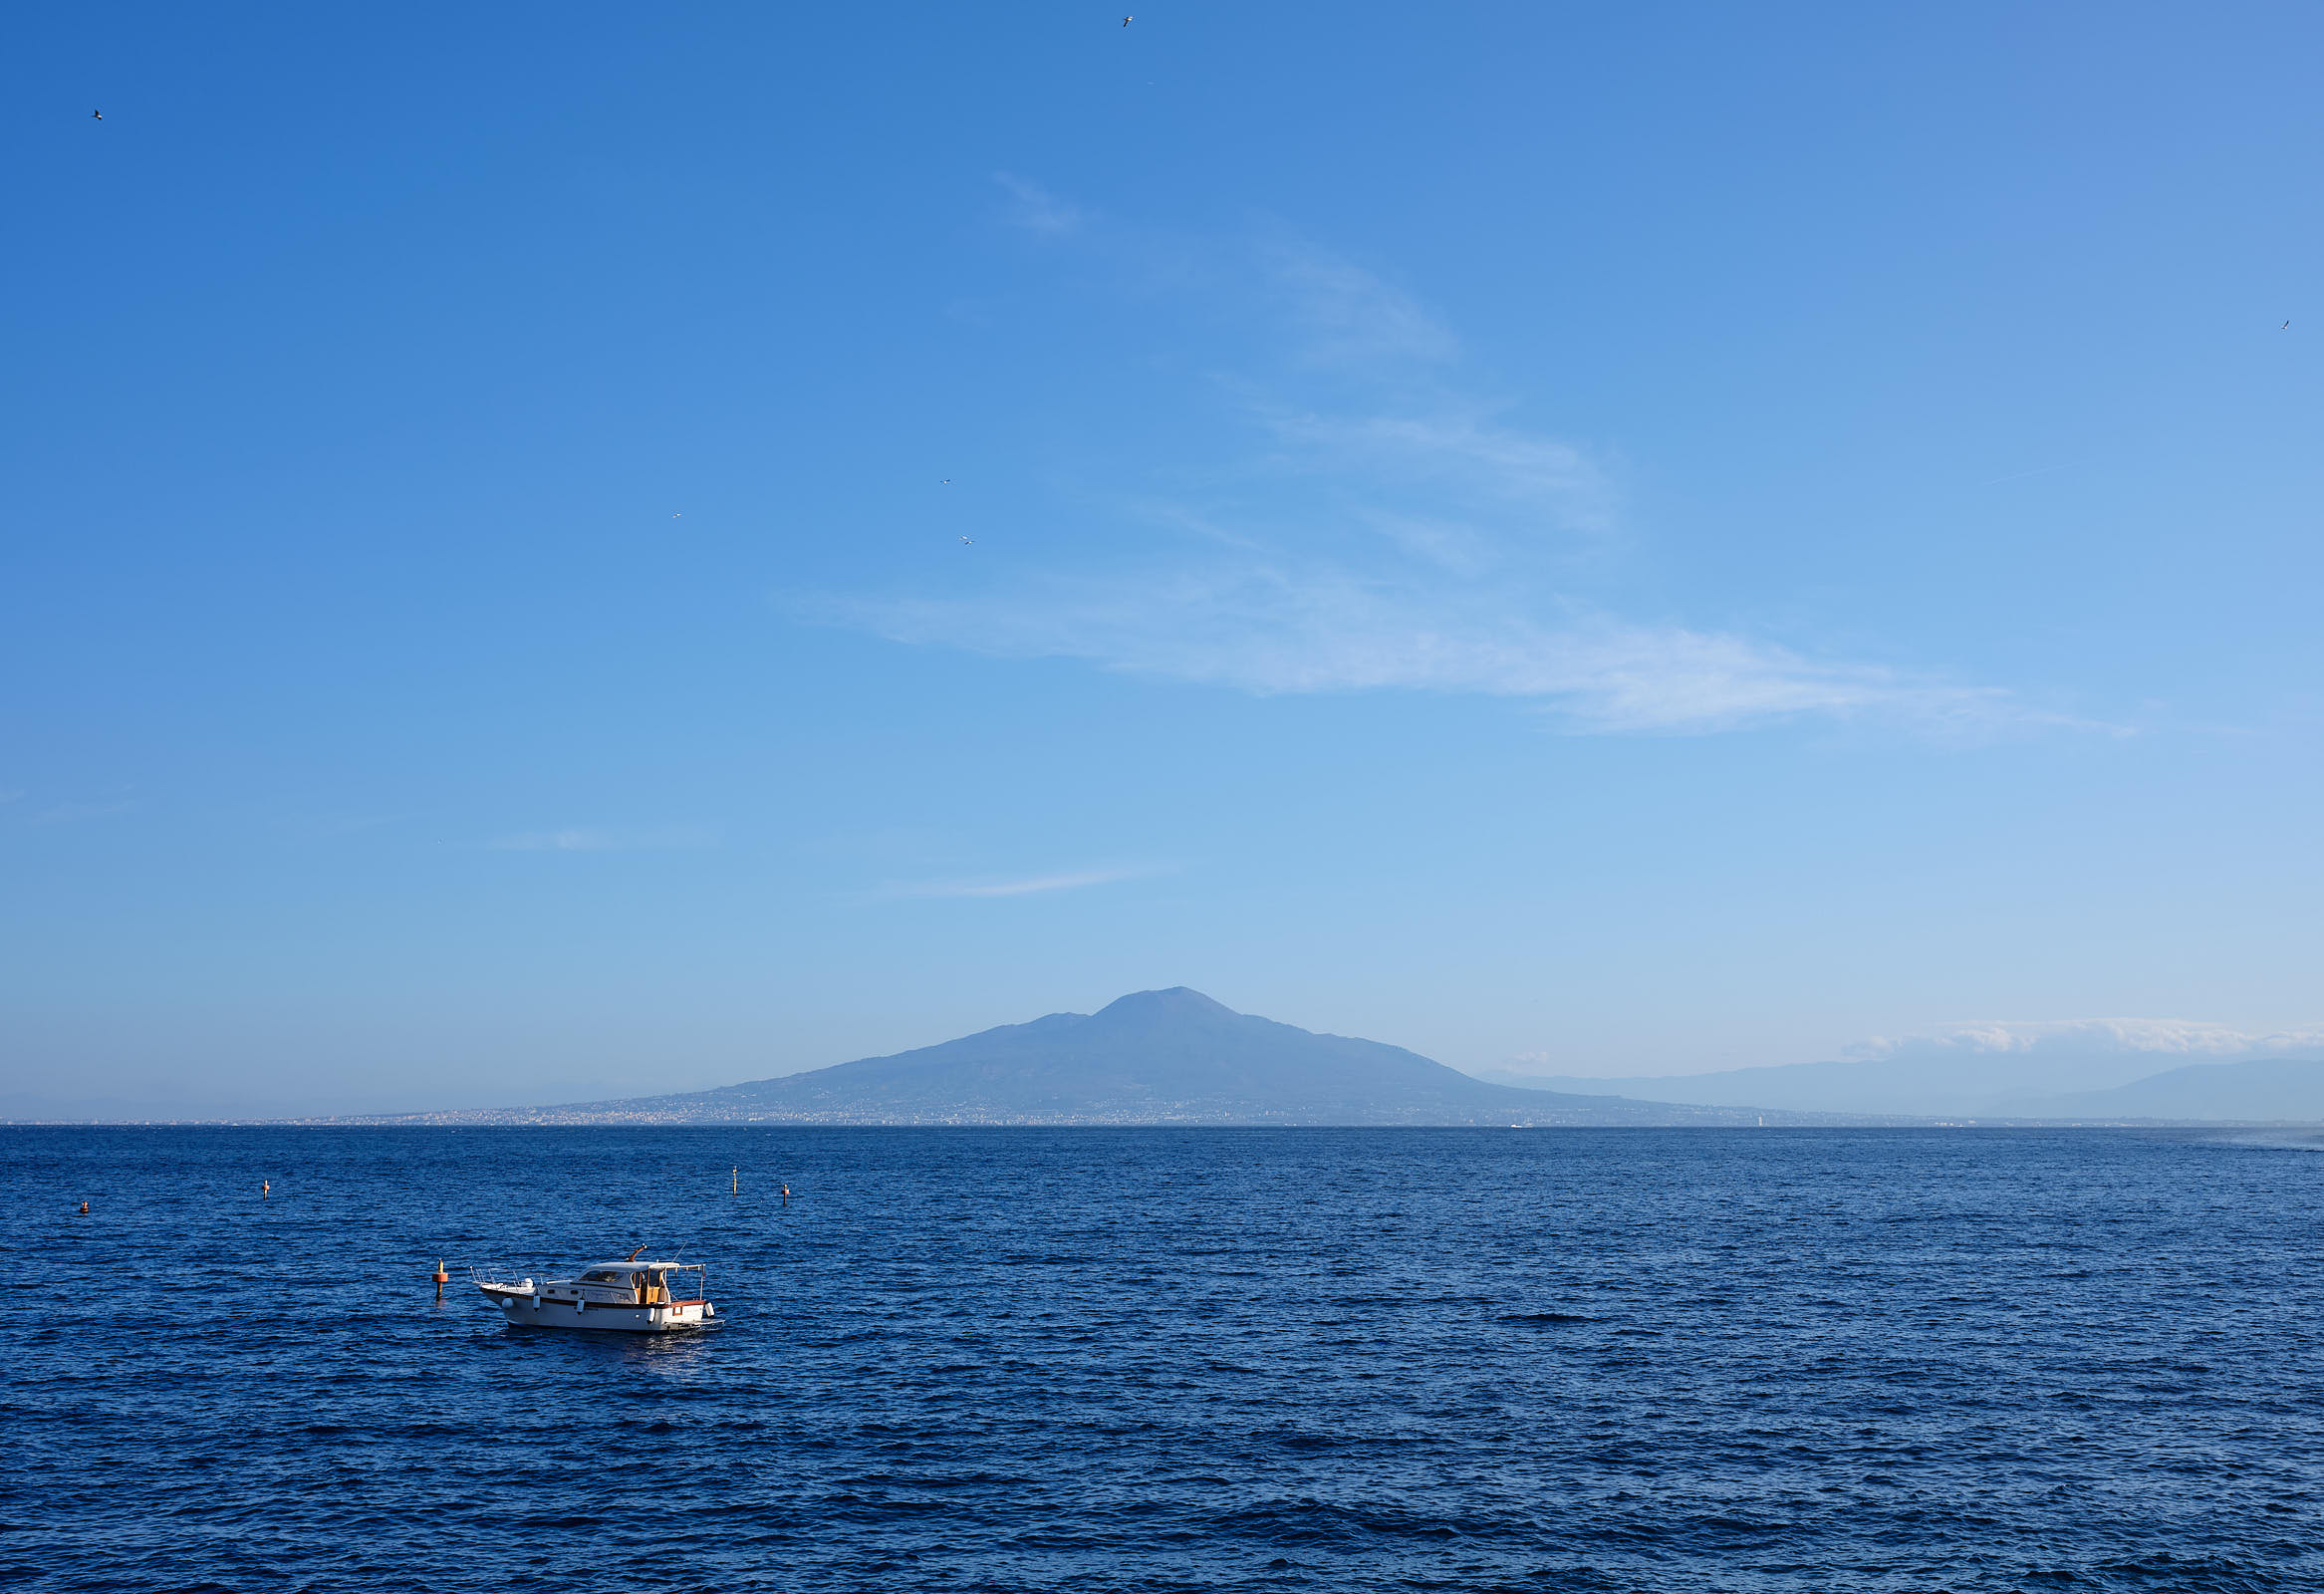 Vesuvius Volcano, across the Bay of Naples